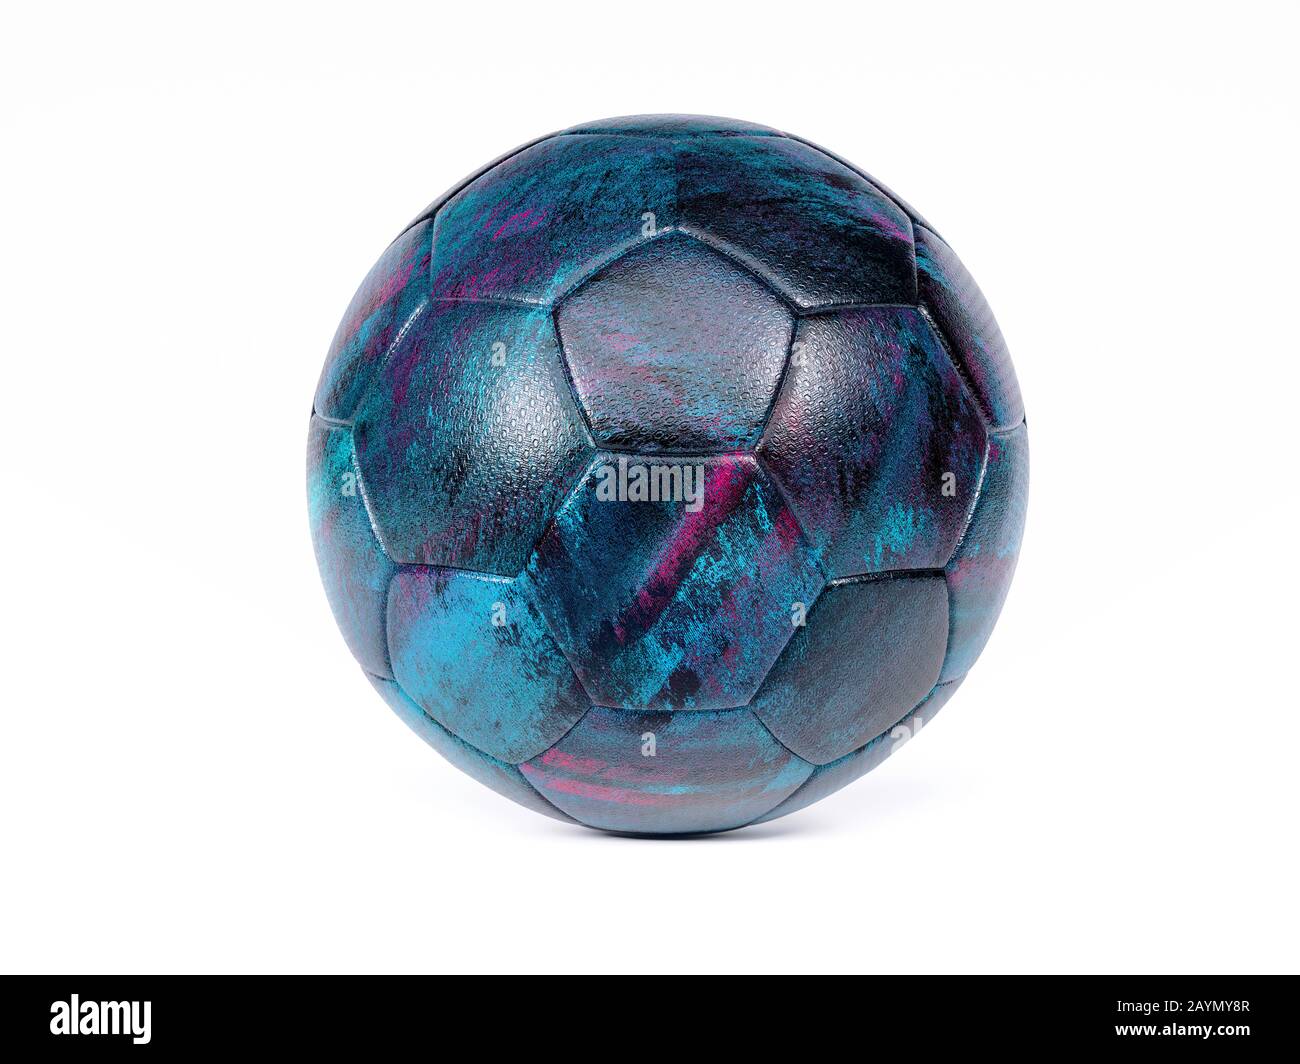 Nero o calcio pallone da calcio con design scuro blu e viola stampa astratta, isolato su sfondo bianco con ombra Foto Stock